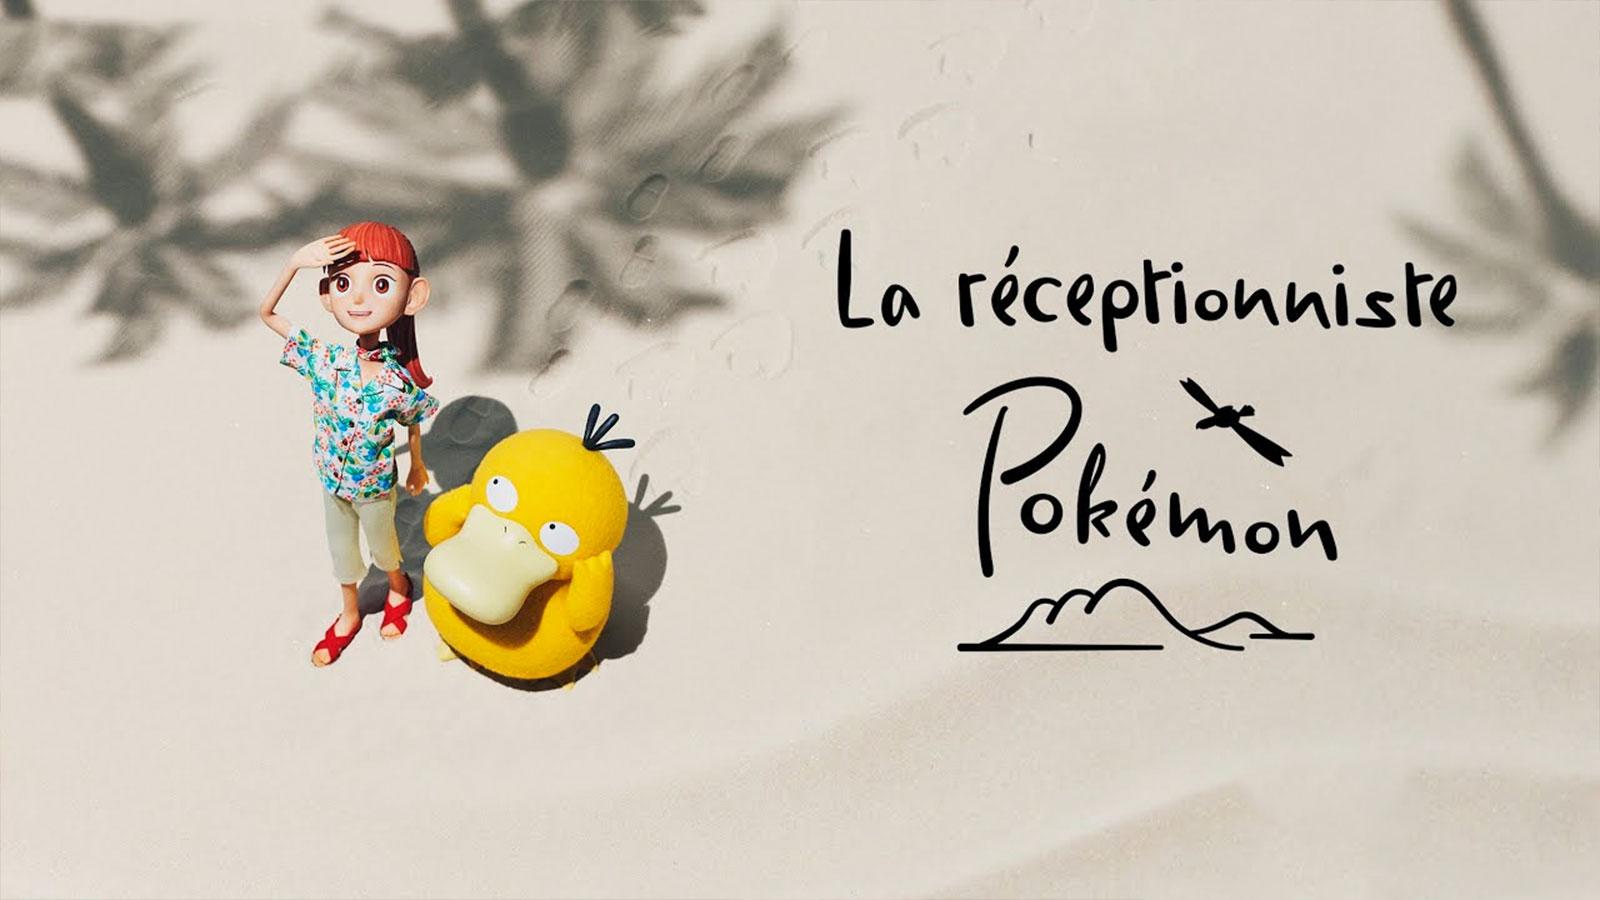 L'affiche promotionnelle de La réceptionniste Pokémon